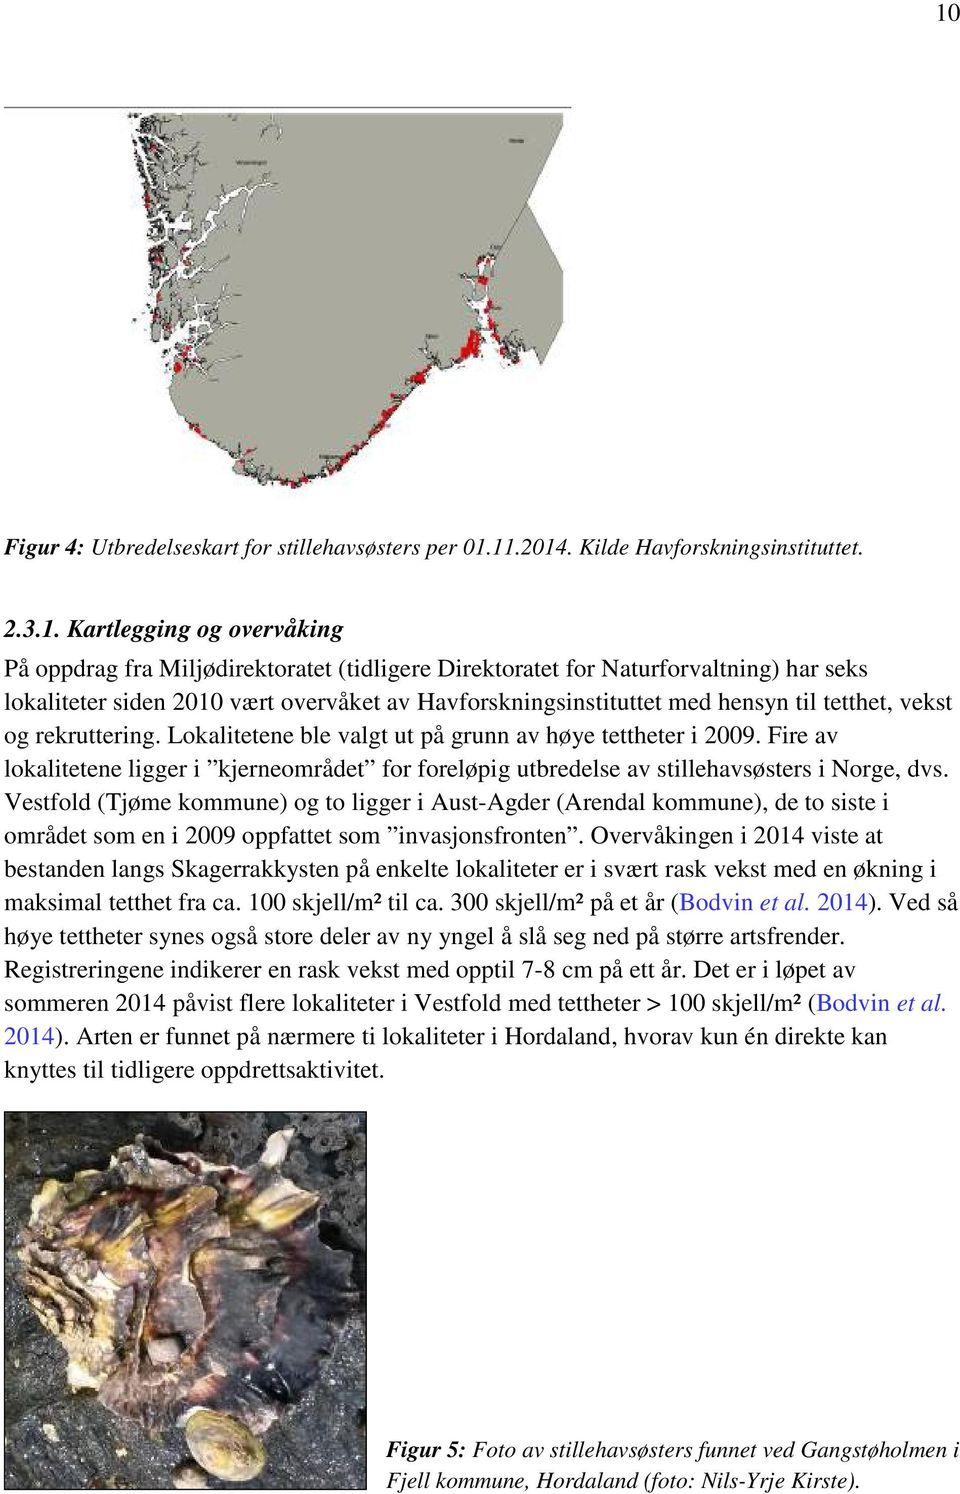 Fire av lokalitetene ligger i kjerneområdet for foreløpig utbredelse av stillehavsøsters i Norge, dvs.